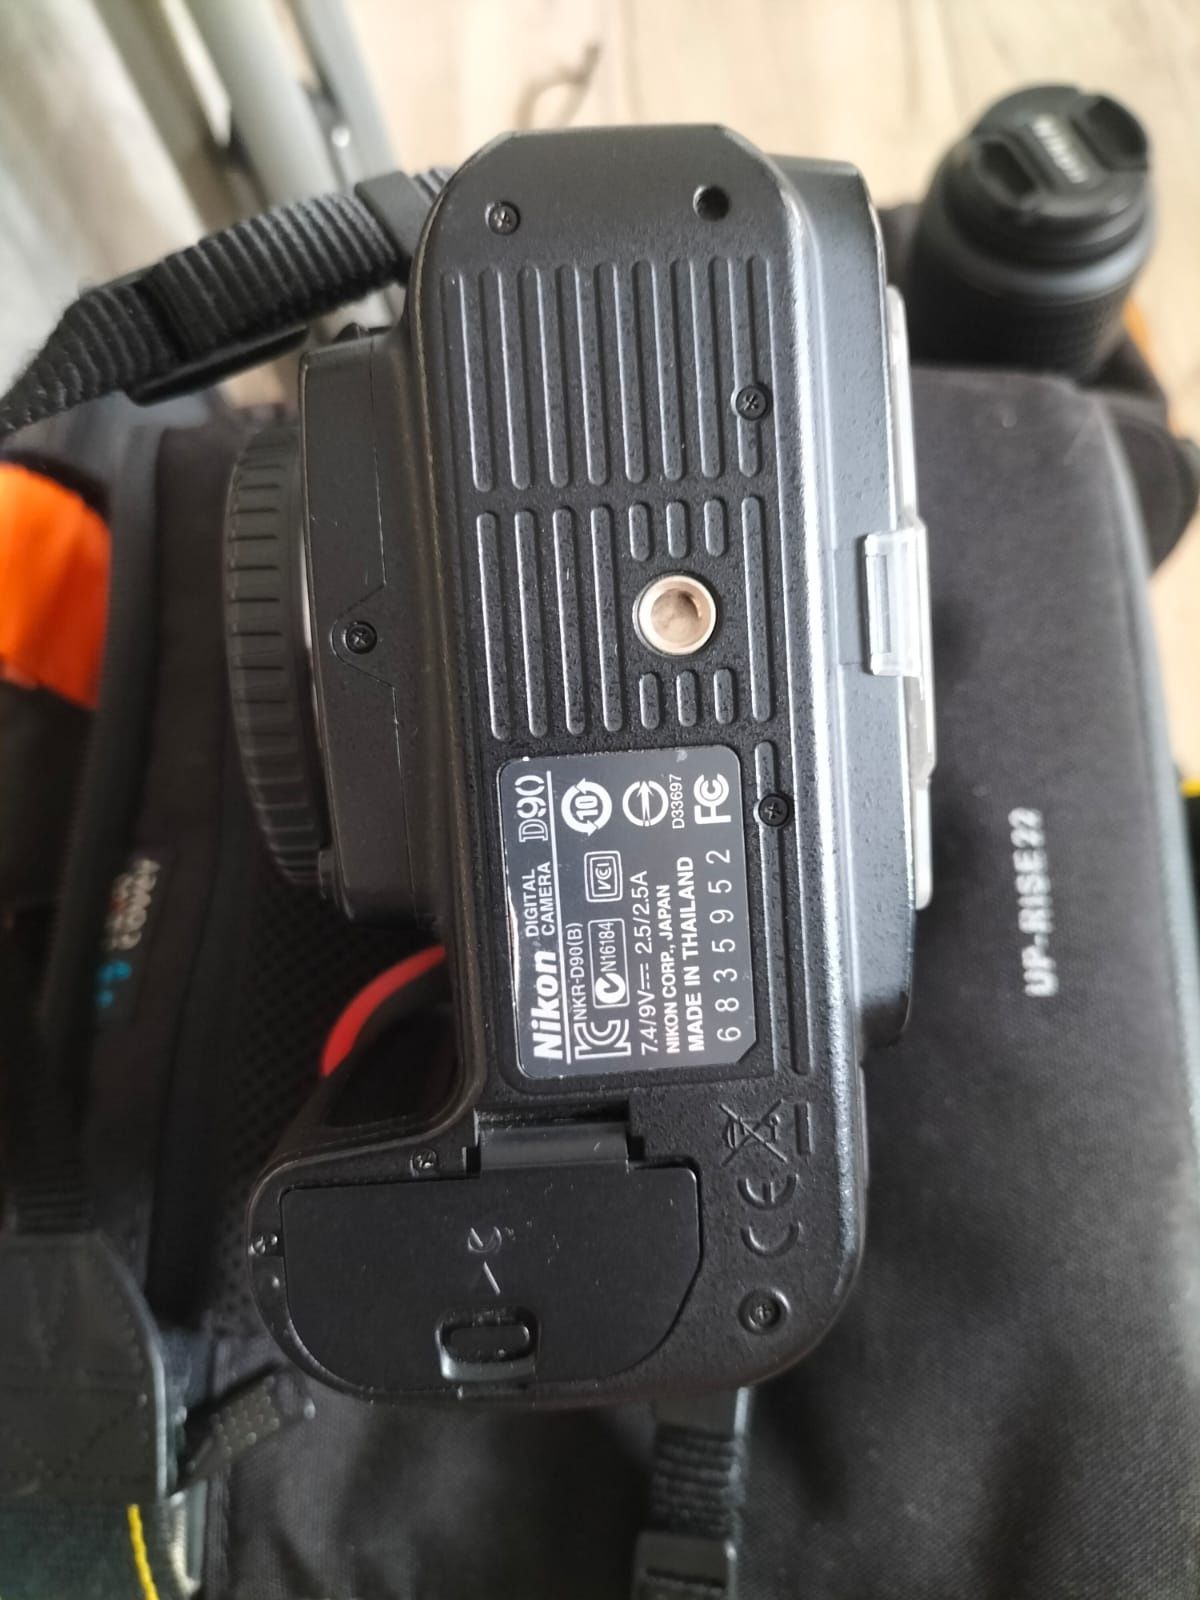 Nikon D90 DSLR, 3 obiective, trepied, cutie impecabil